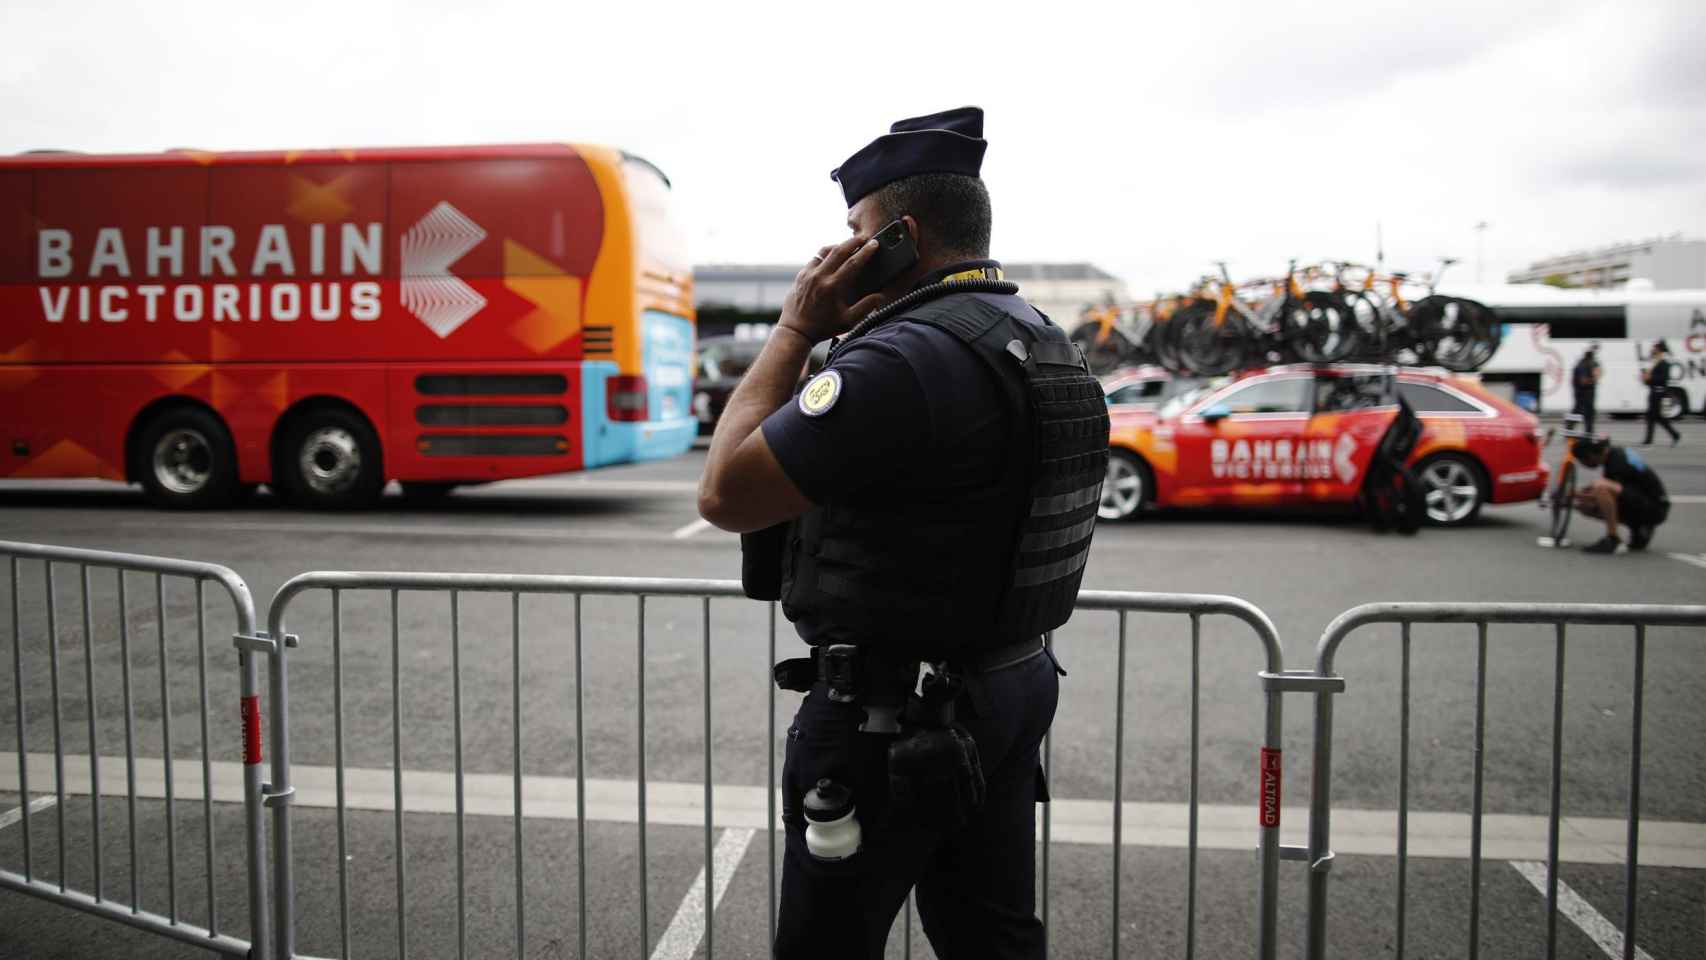 Un gendarme delante del autobús y uno de los coches del Bahrain Victorious durante el Tour de Francia 2021